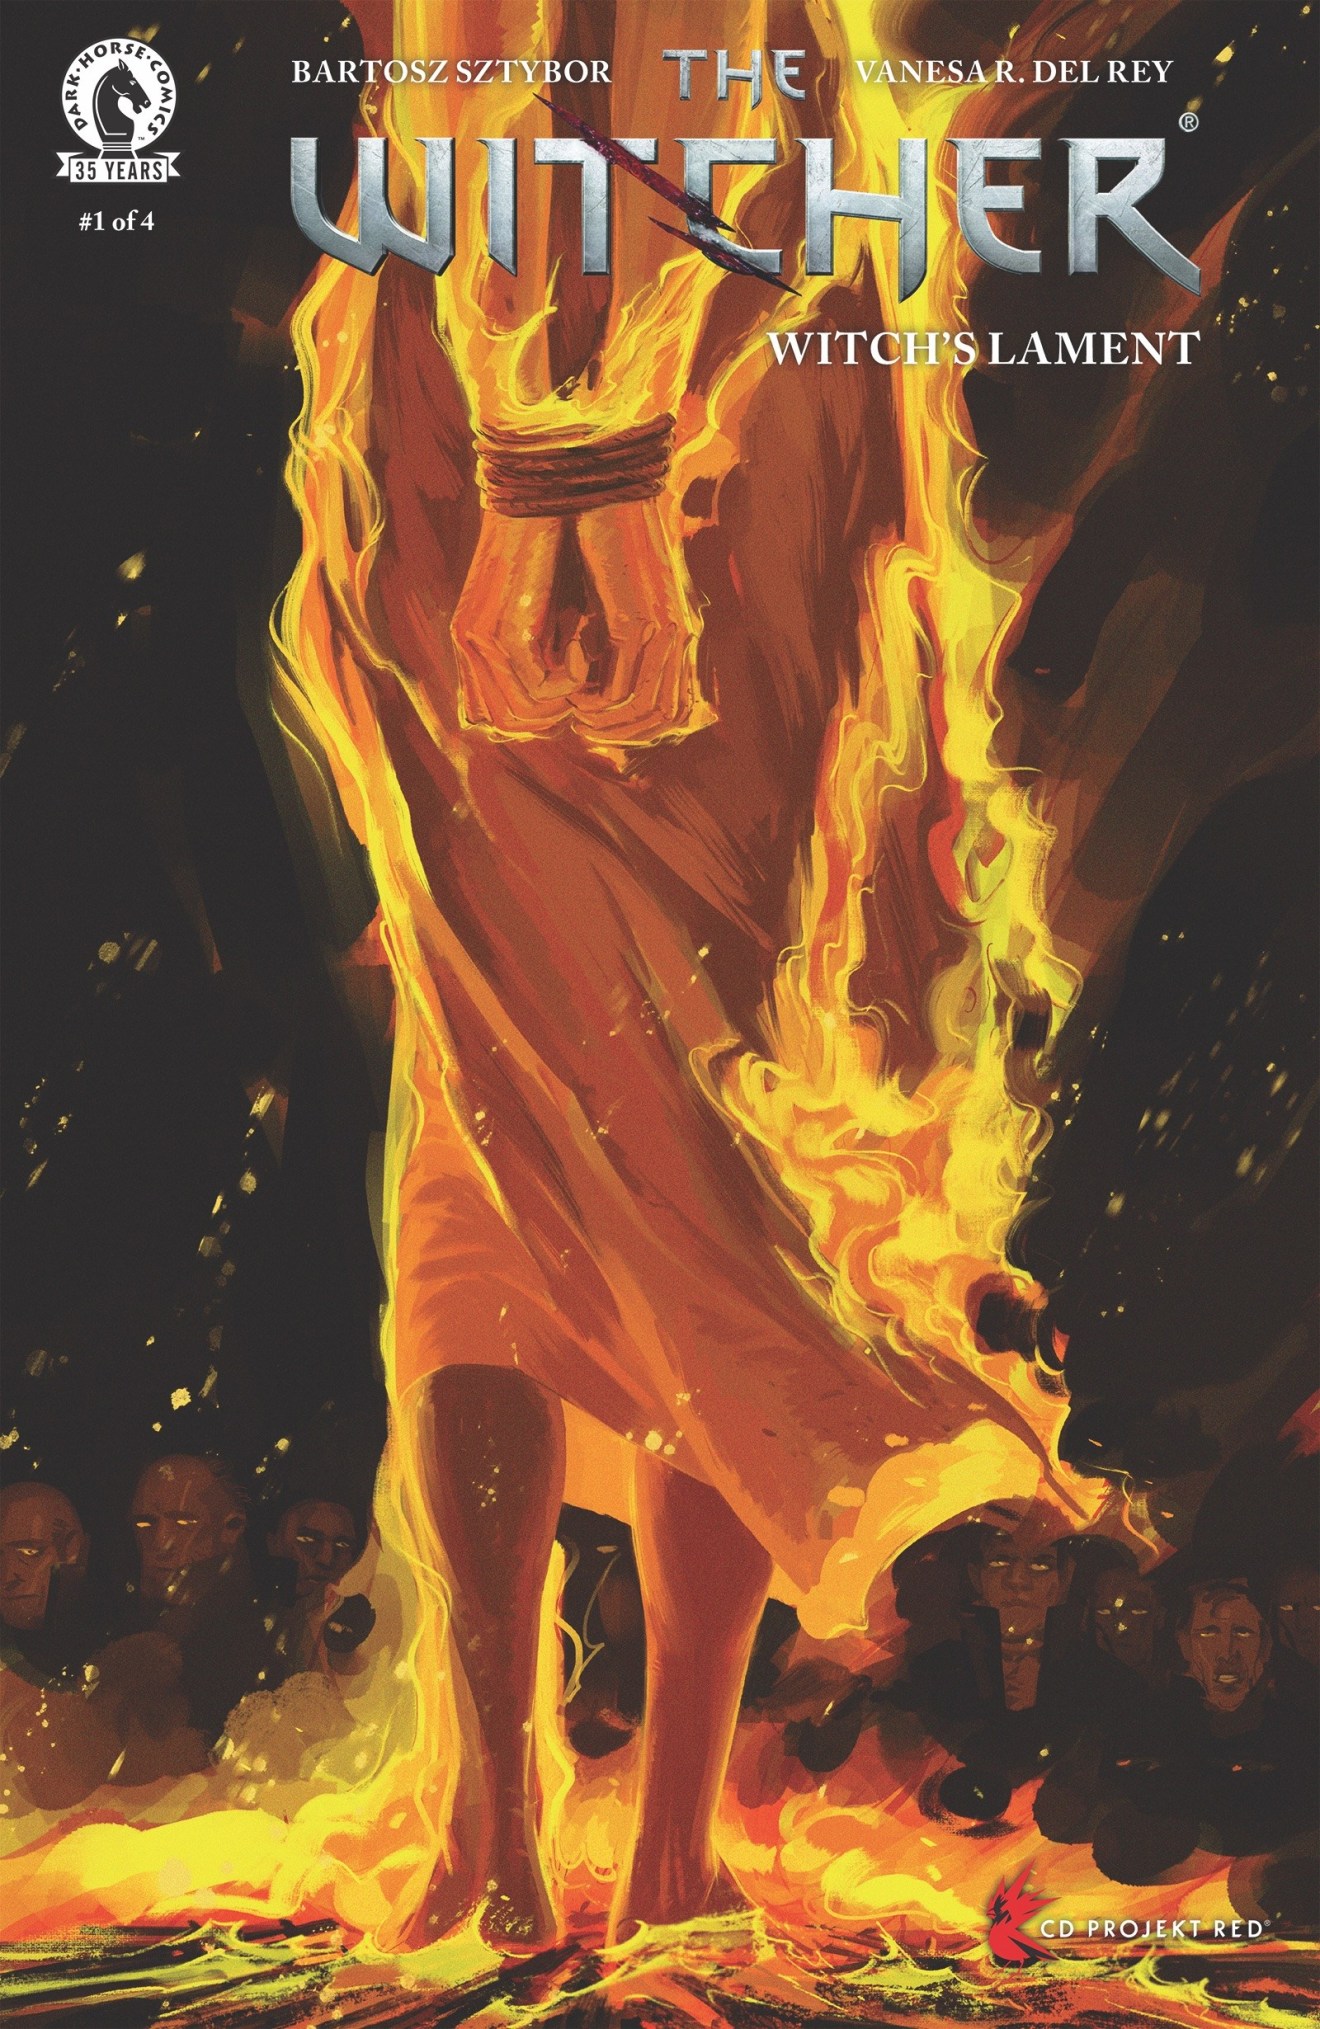 黑马漫画将于5月26日发行《巫师》漫画系列新作